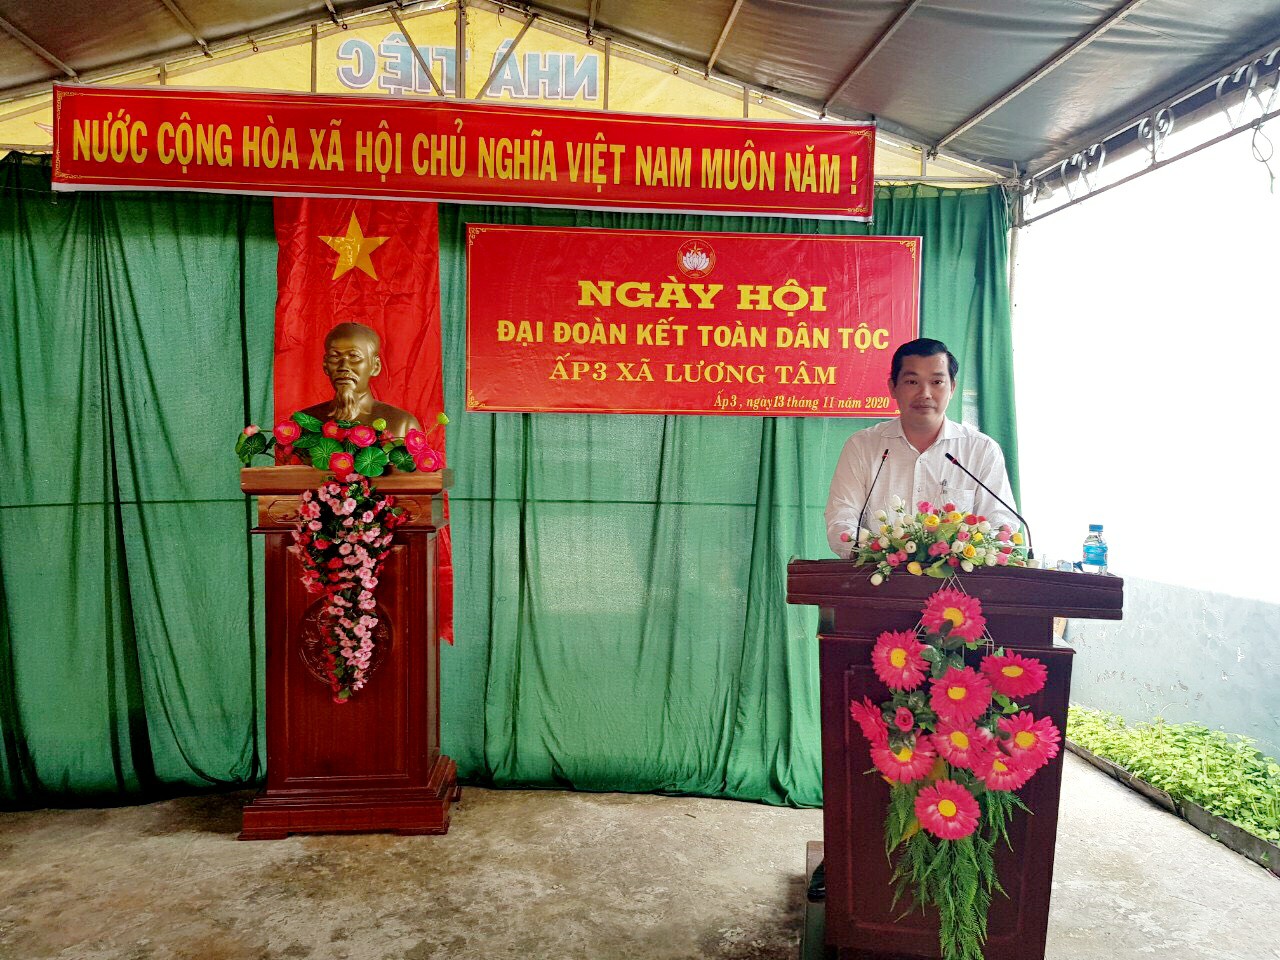 Ông Lê Minh Tuấn - Phó Chủ tịch, kiêm Tổng Thư ký Liên hiệp Hậu Giang phát biểu tại ngày hội Đại đoàn kết toàn dân tộc tại ấp 3, xã Lương Tâm